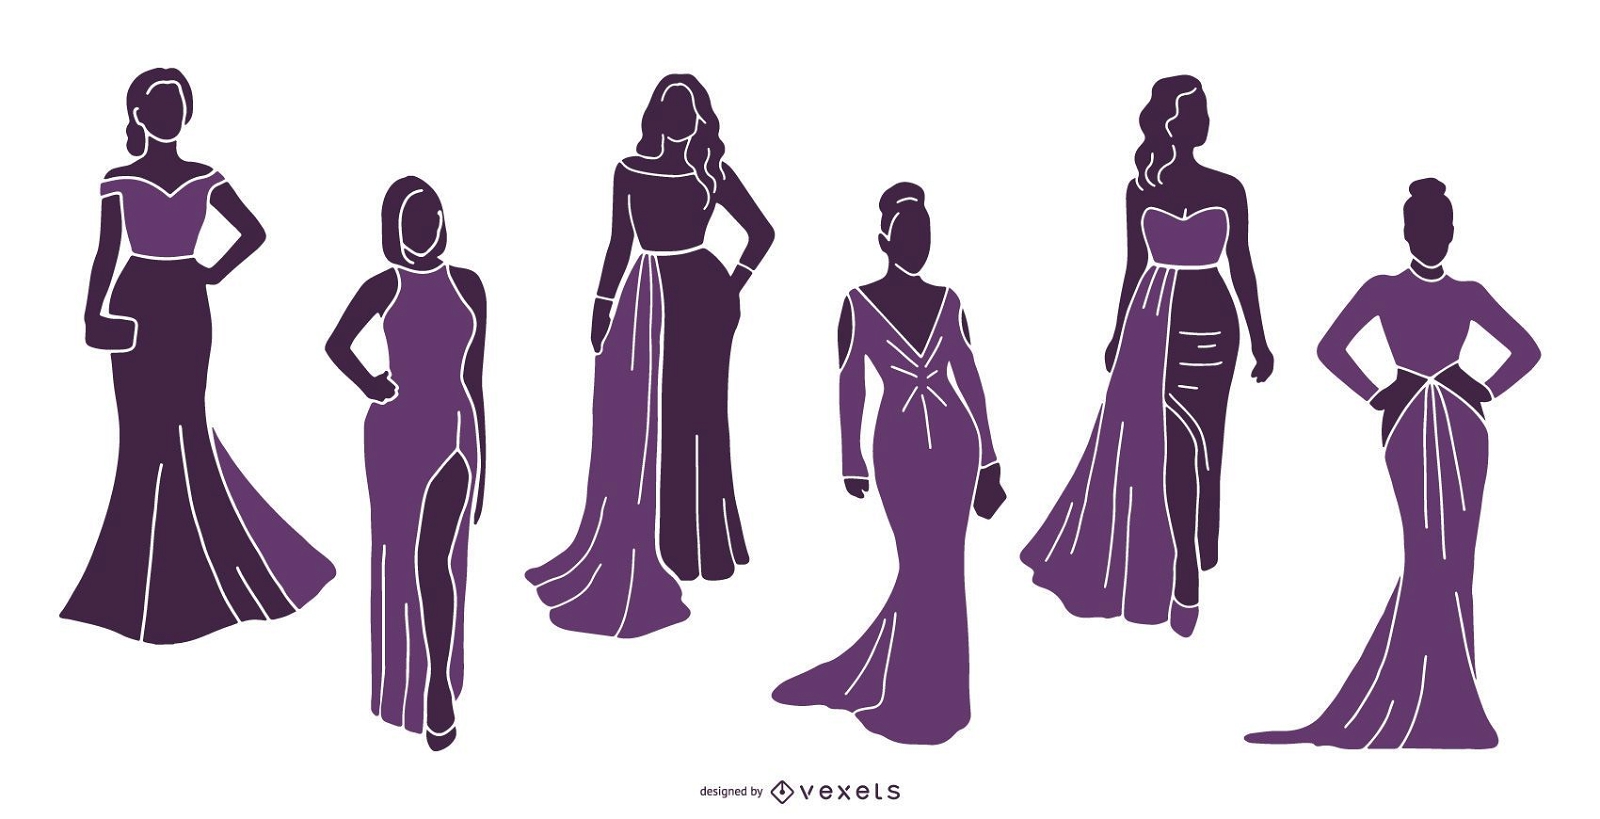 Women models silhouette set